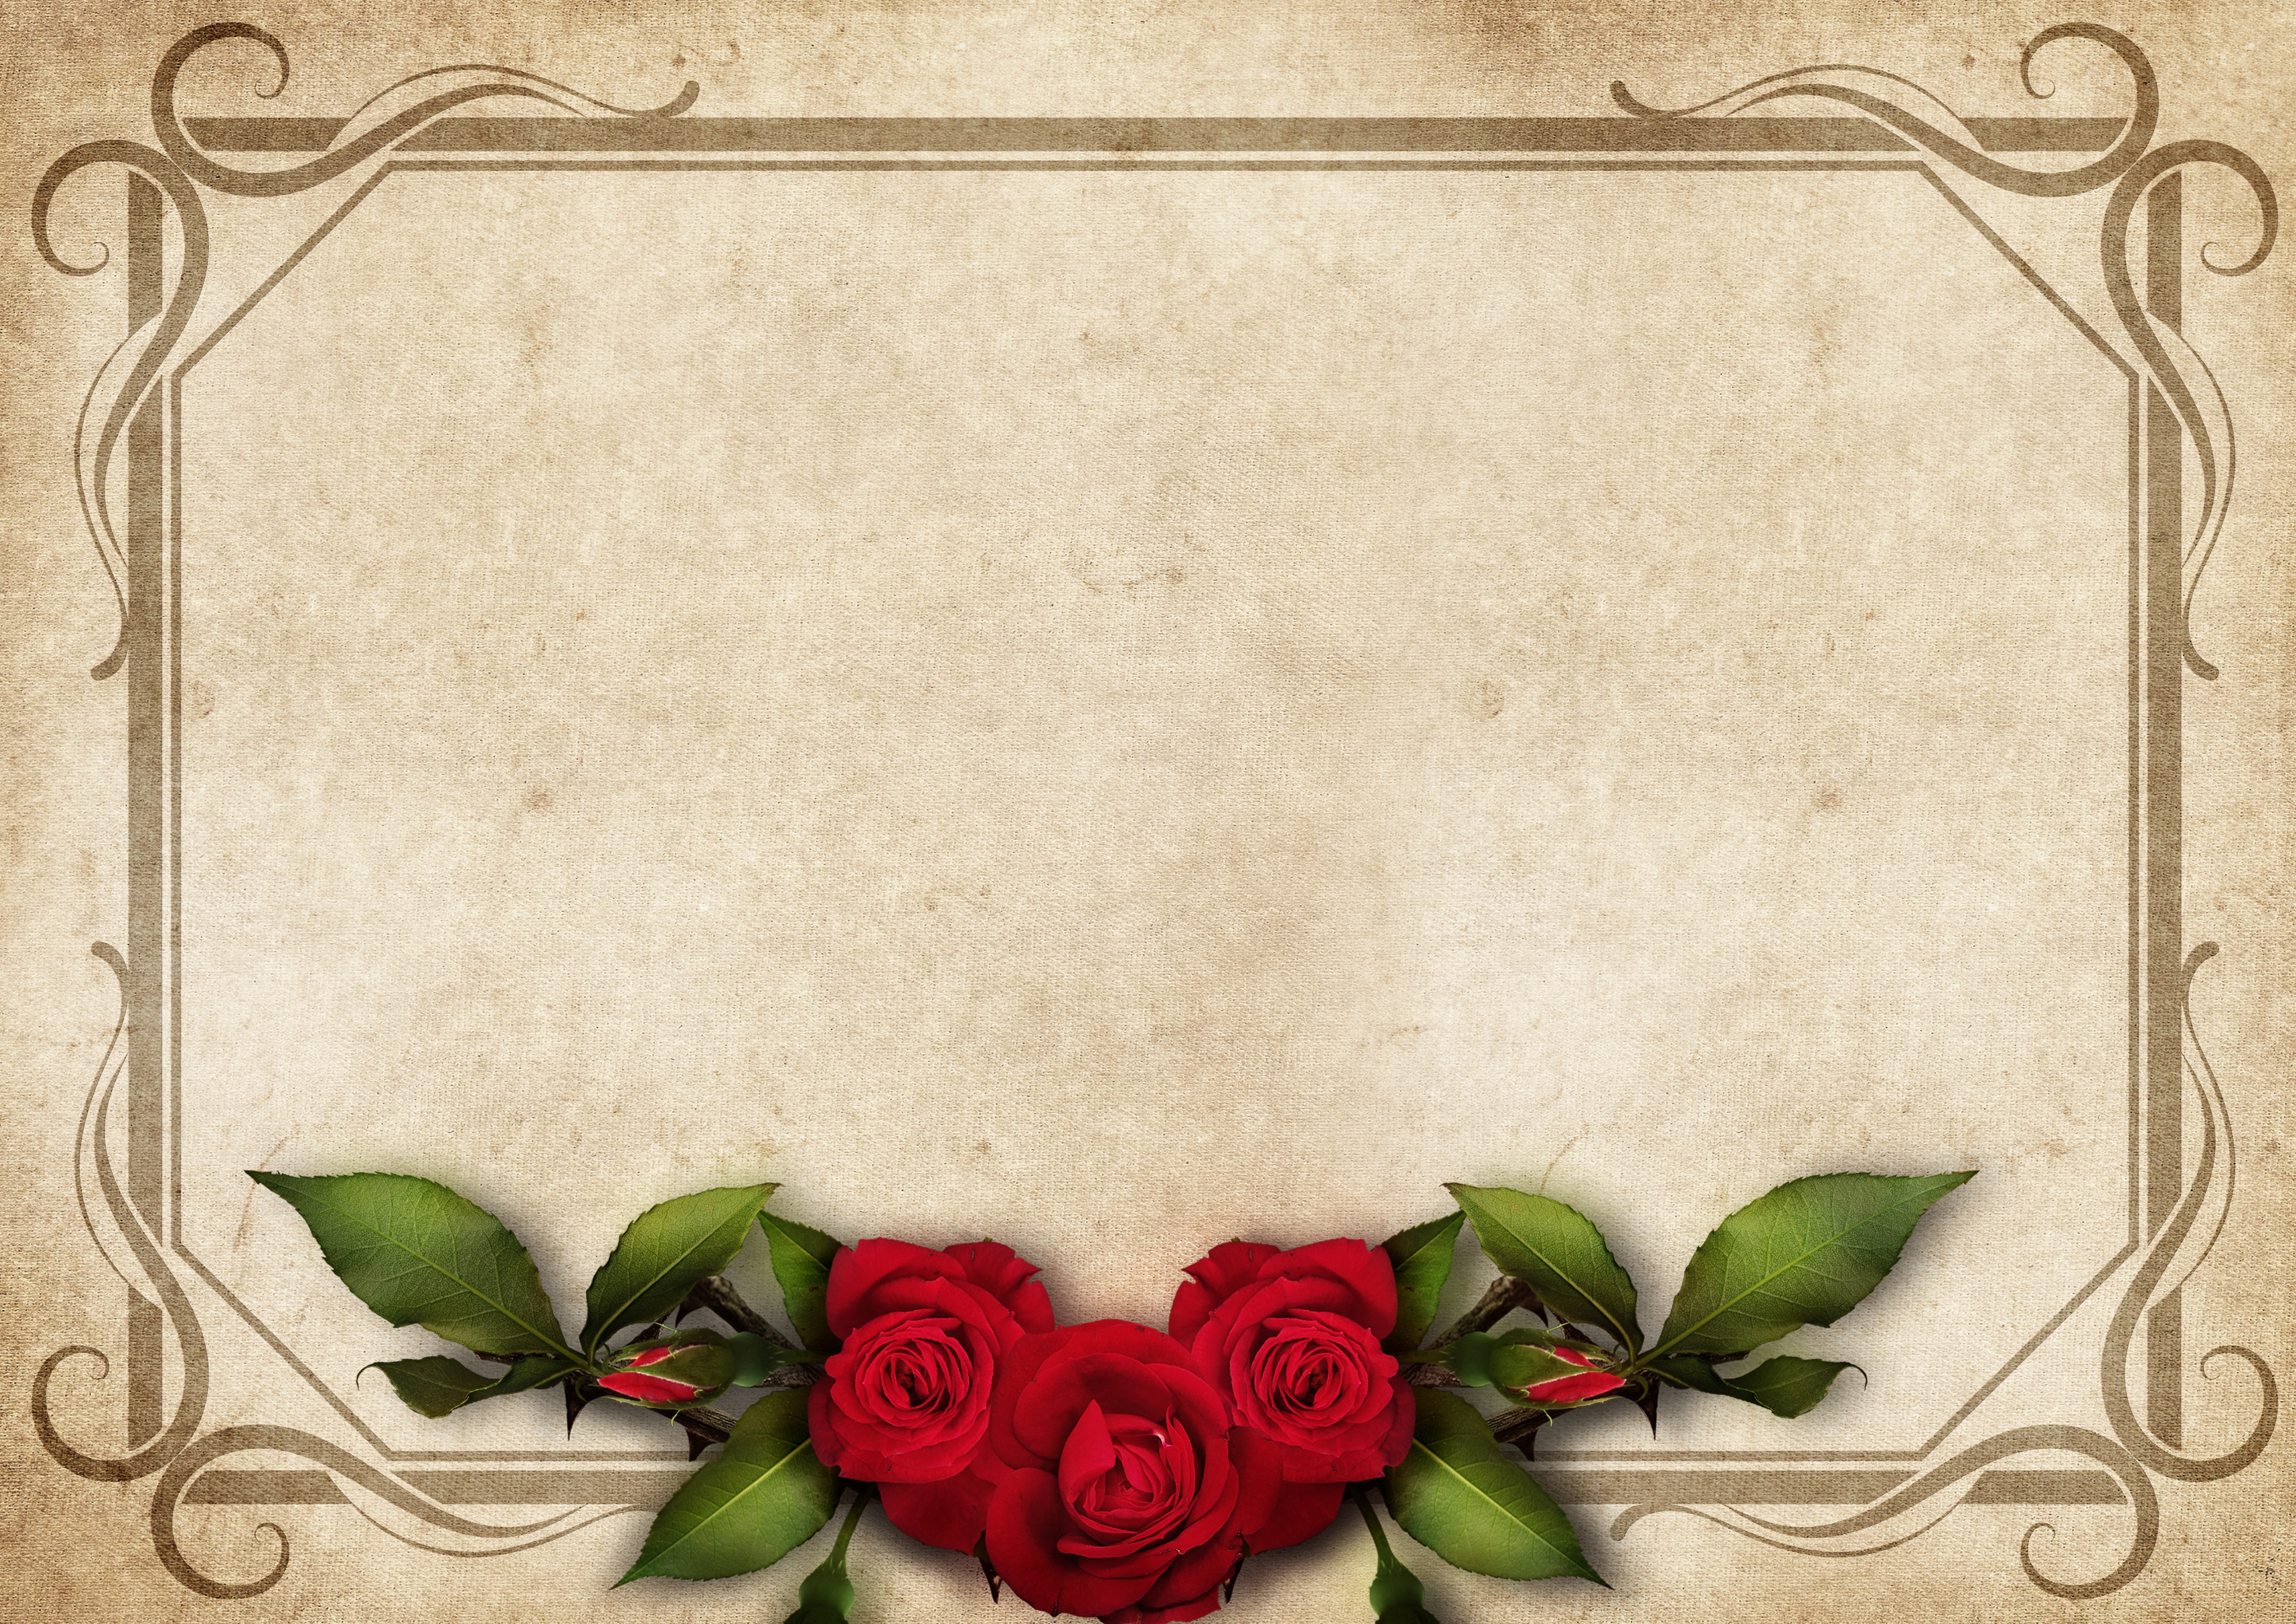 Фон для поздравления февраль. Открытка пустая. Рамка розы. Красивые обрамления для открыток. Фон для поздравления.